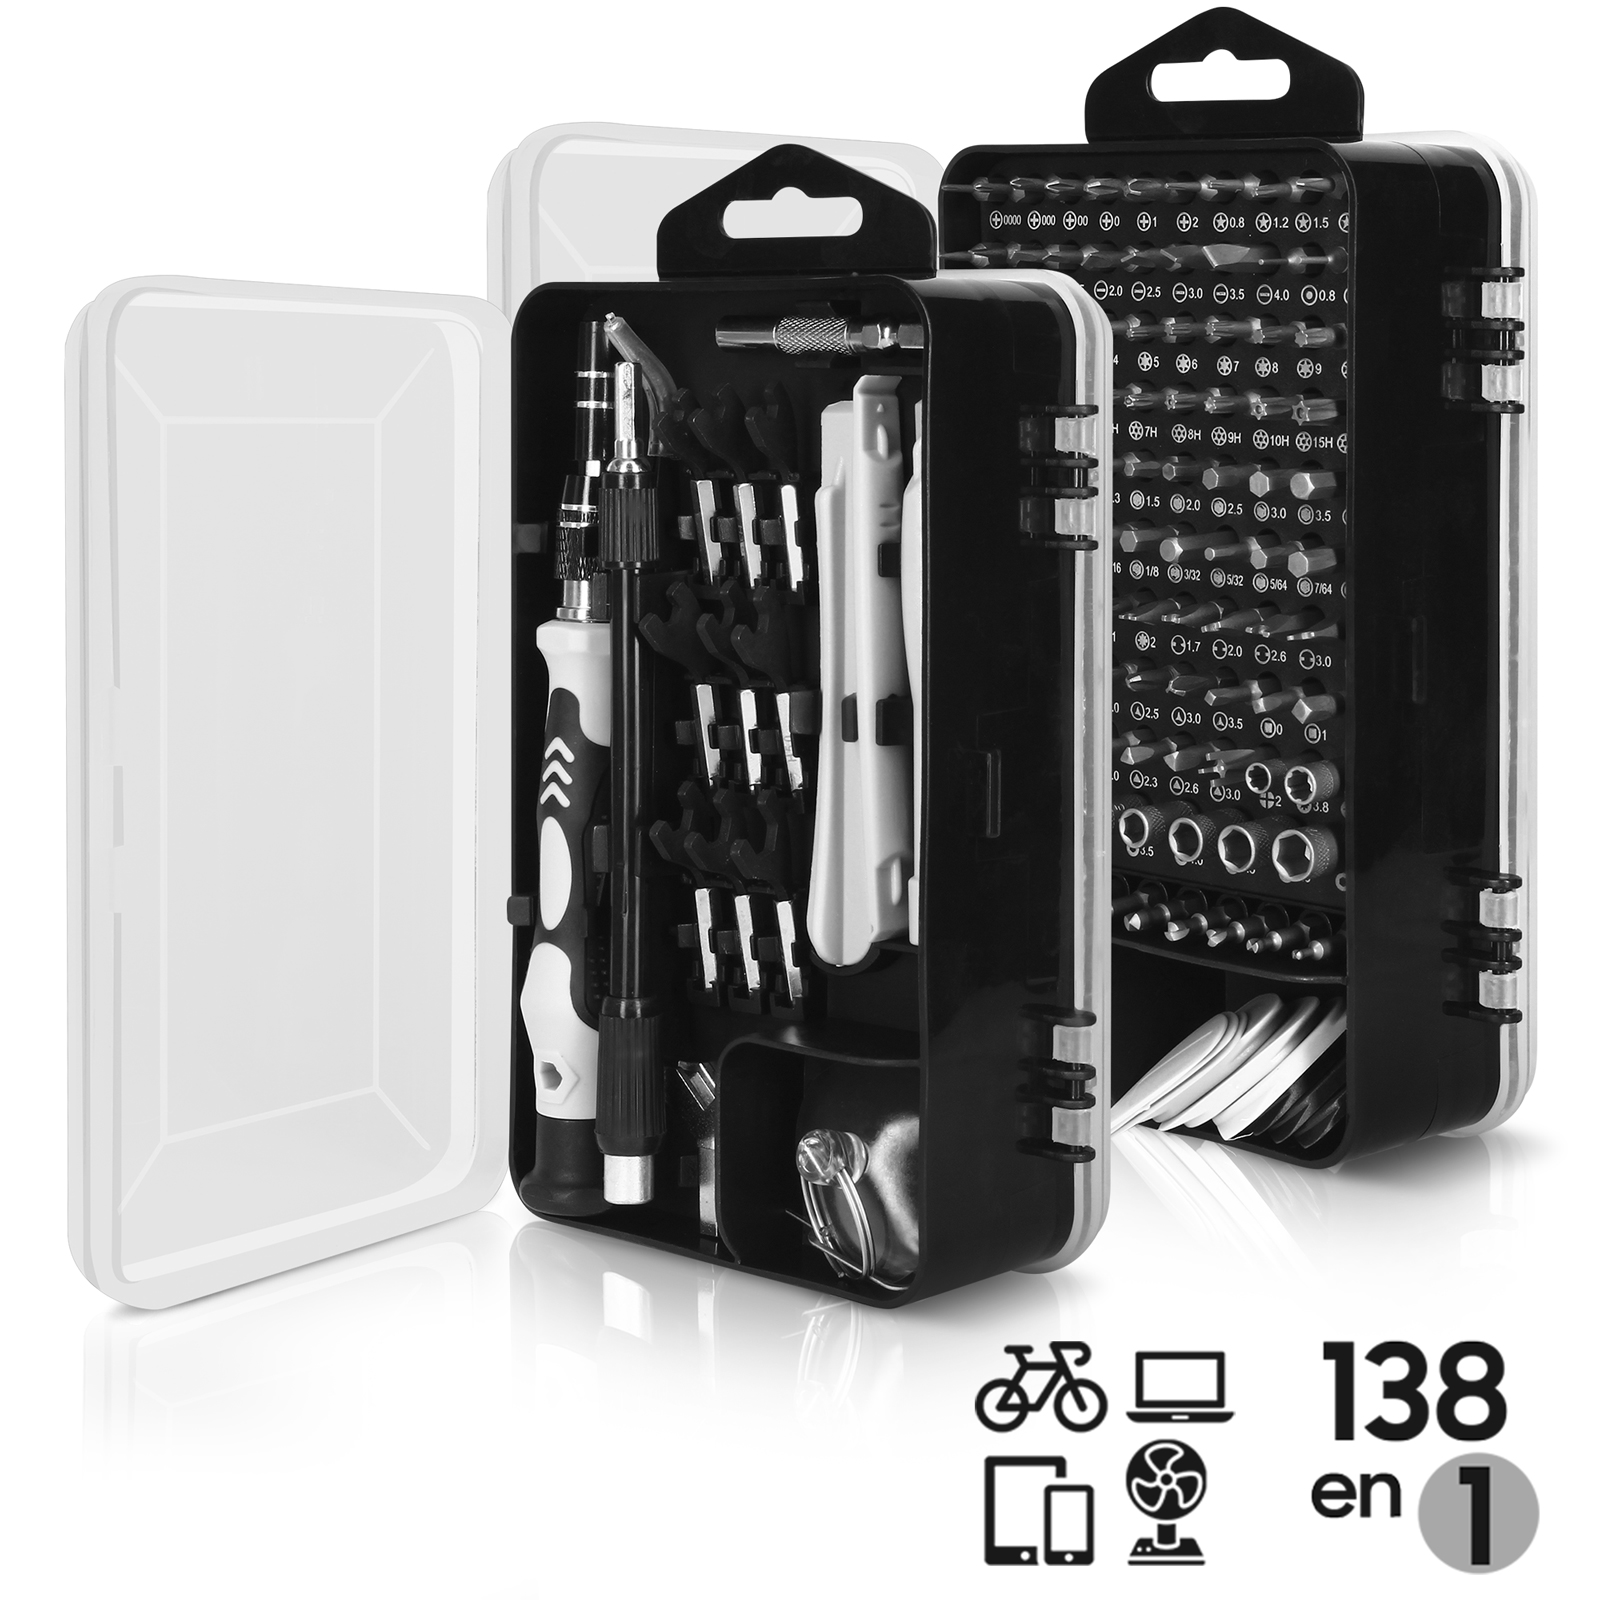 Boîte à outils | 17 en 1 | pour la réparation de PC, smartphone et tablette  | bol